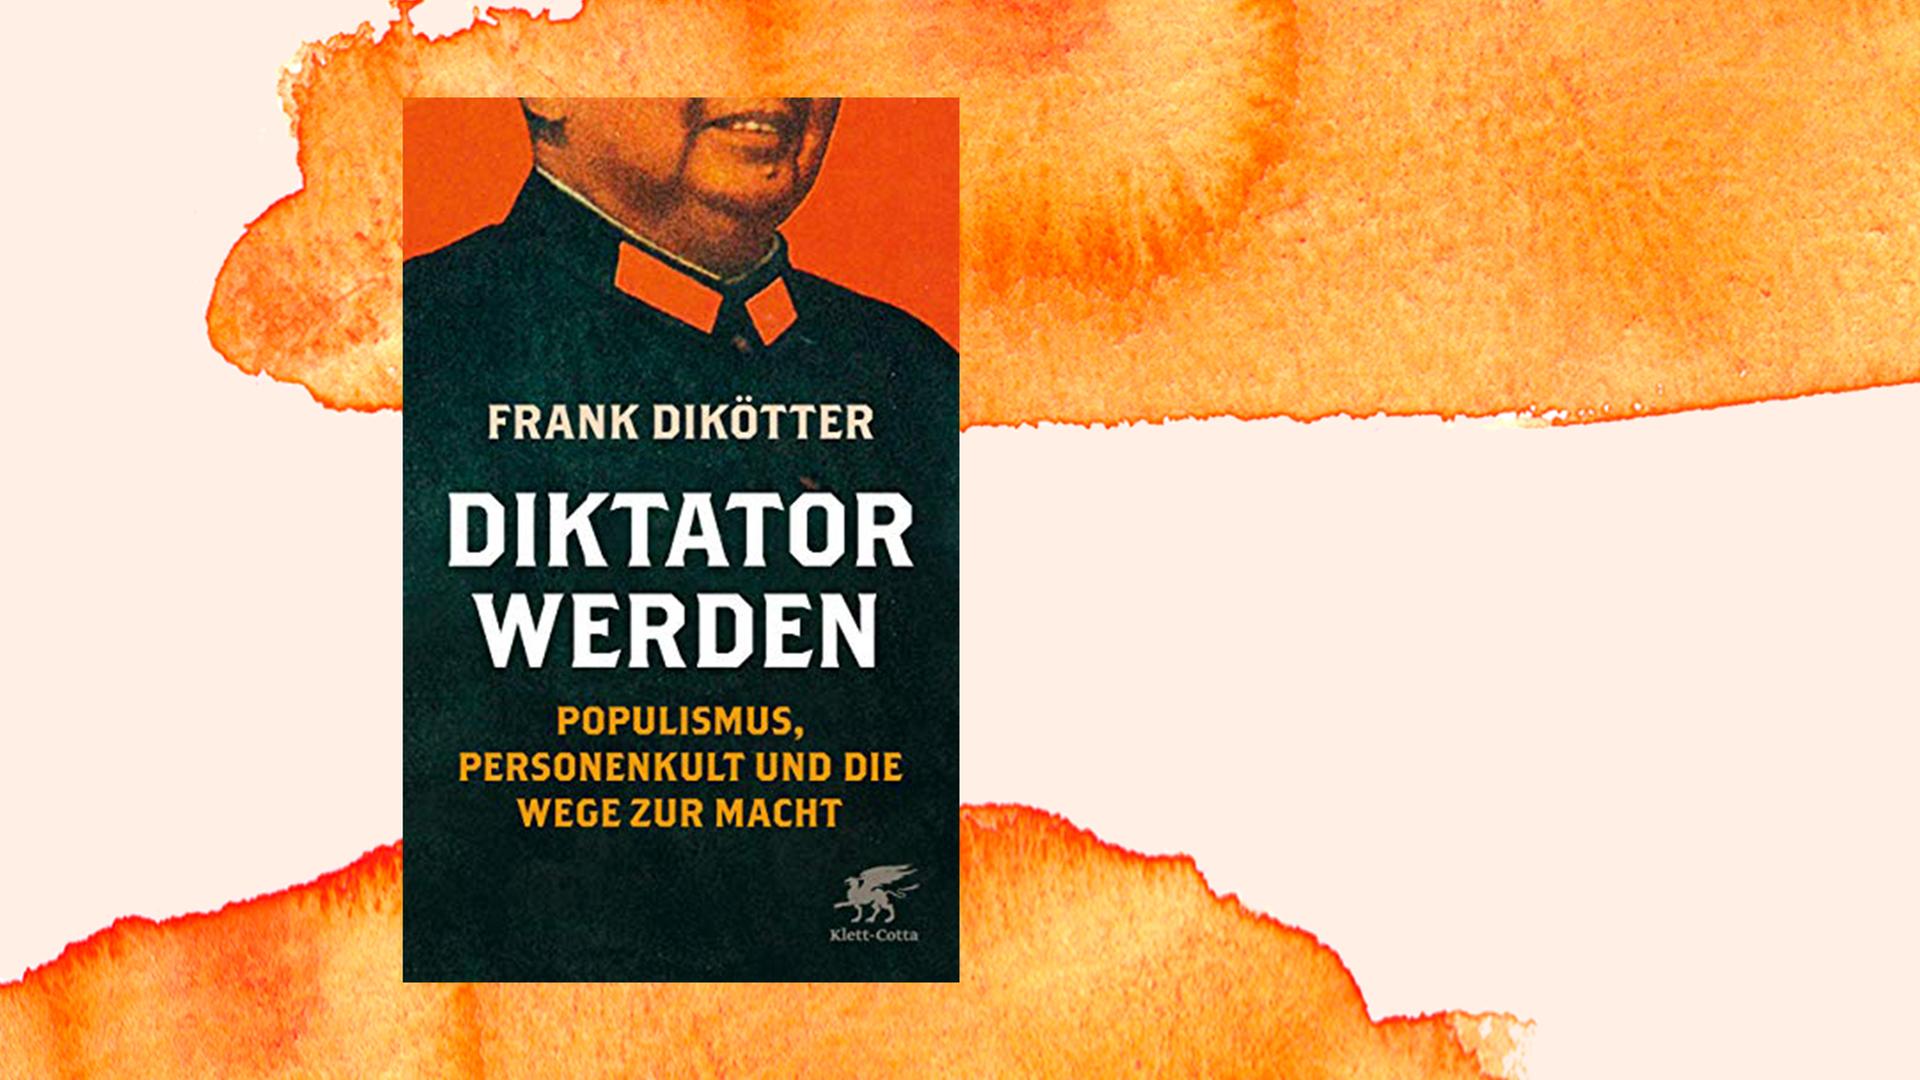 Frank Dikötter "Diktator werden. Populismus, Personenkult und die Wege zur Macht." Klett-Cotta Verlag